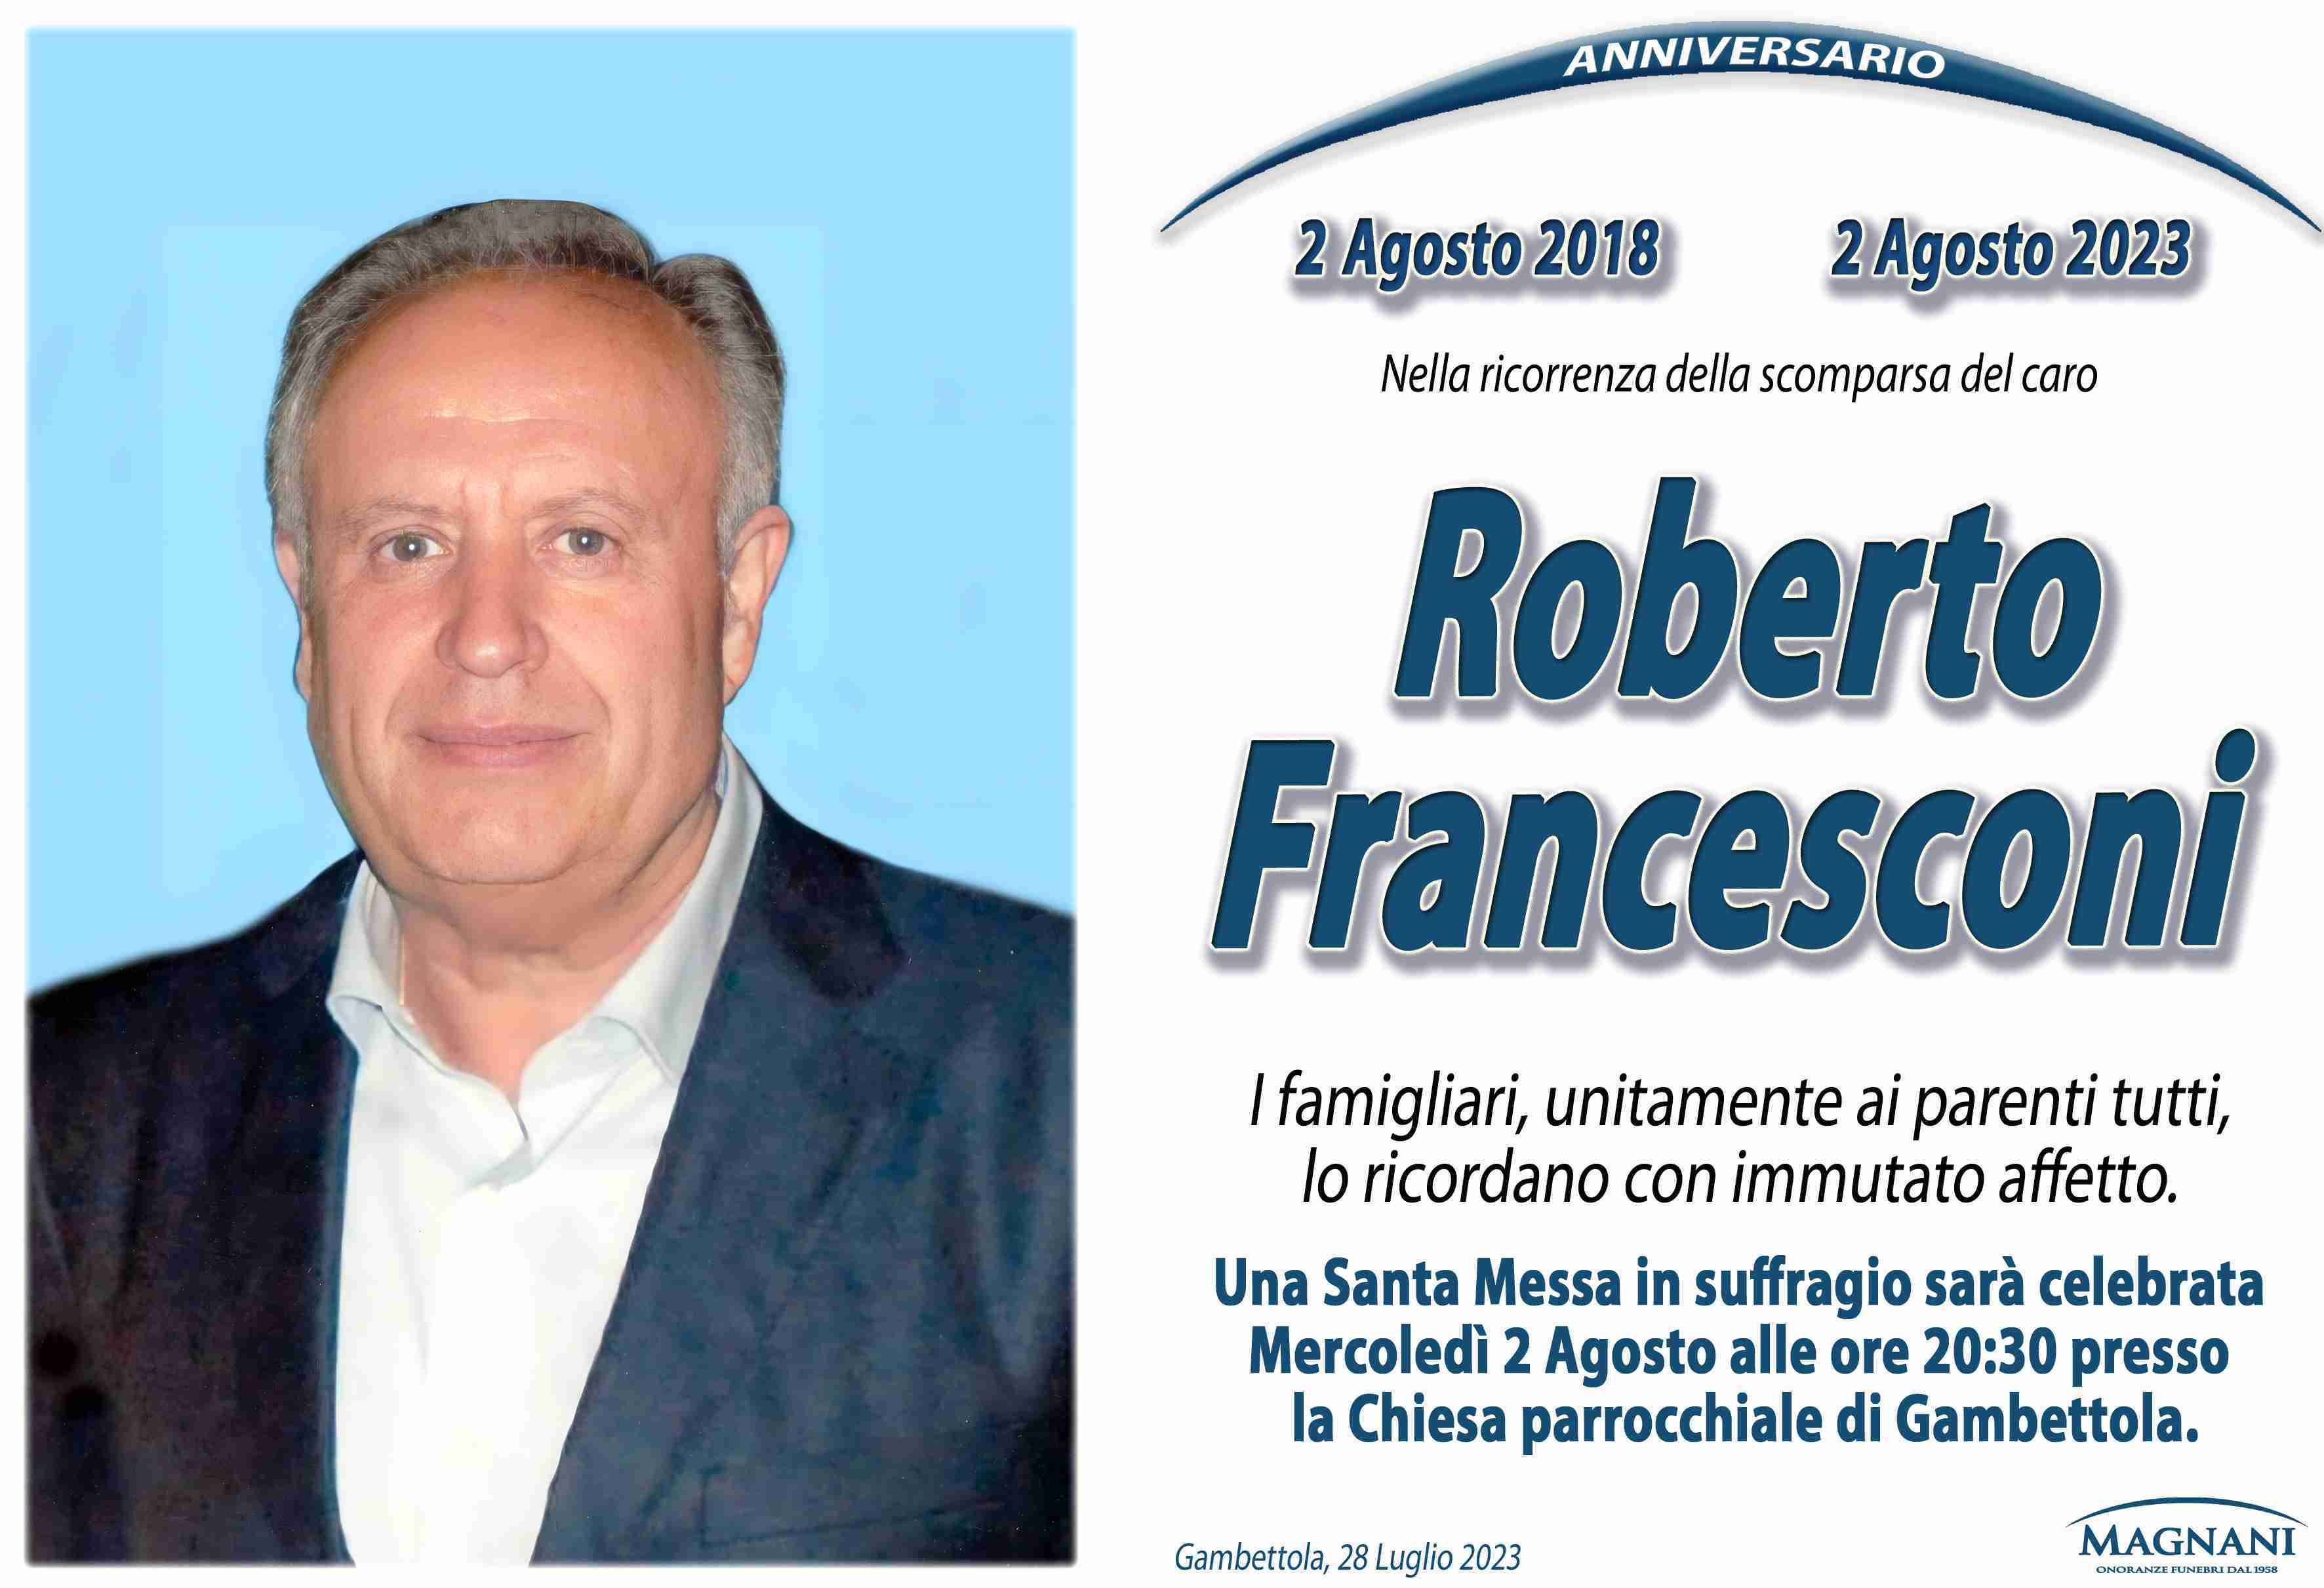 Roberto Francesconi